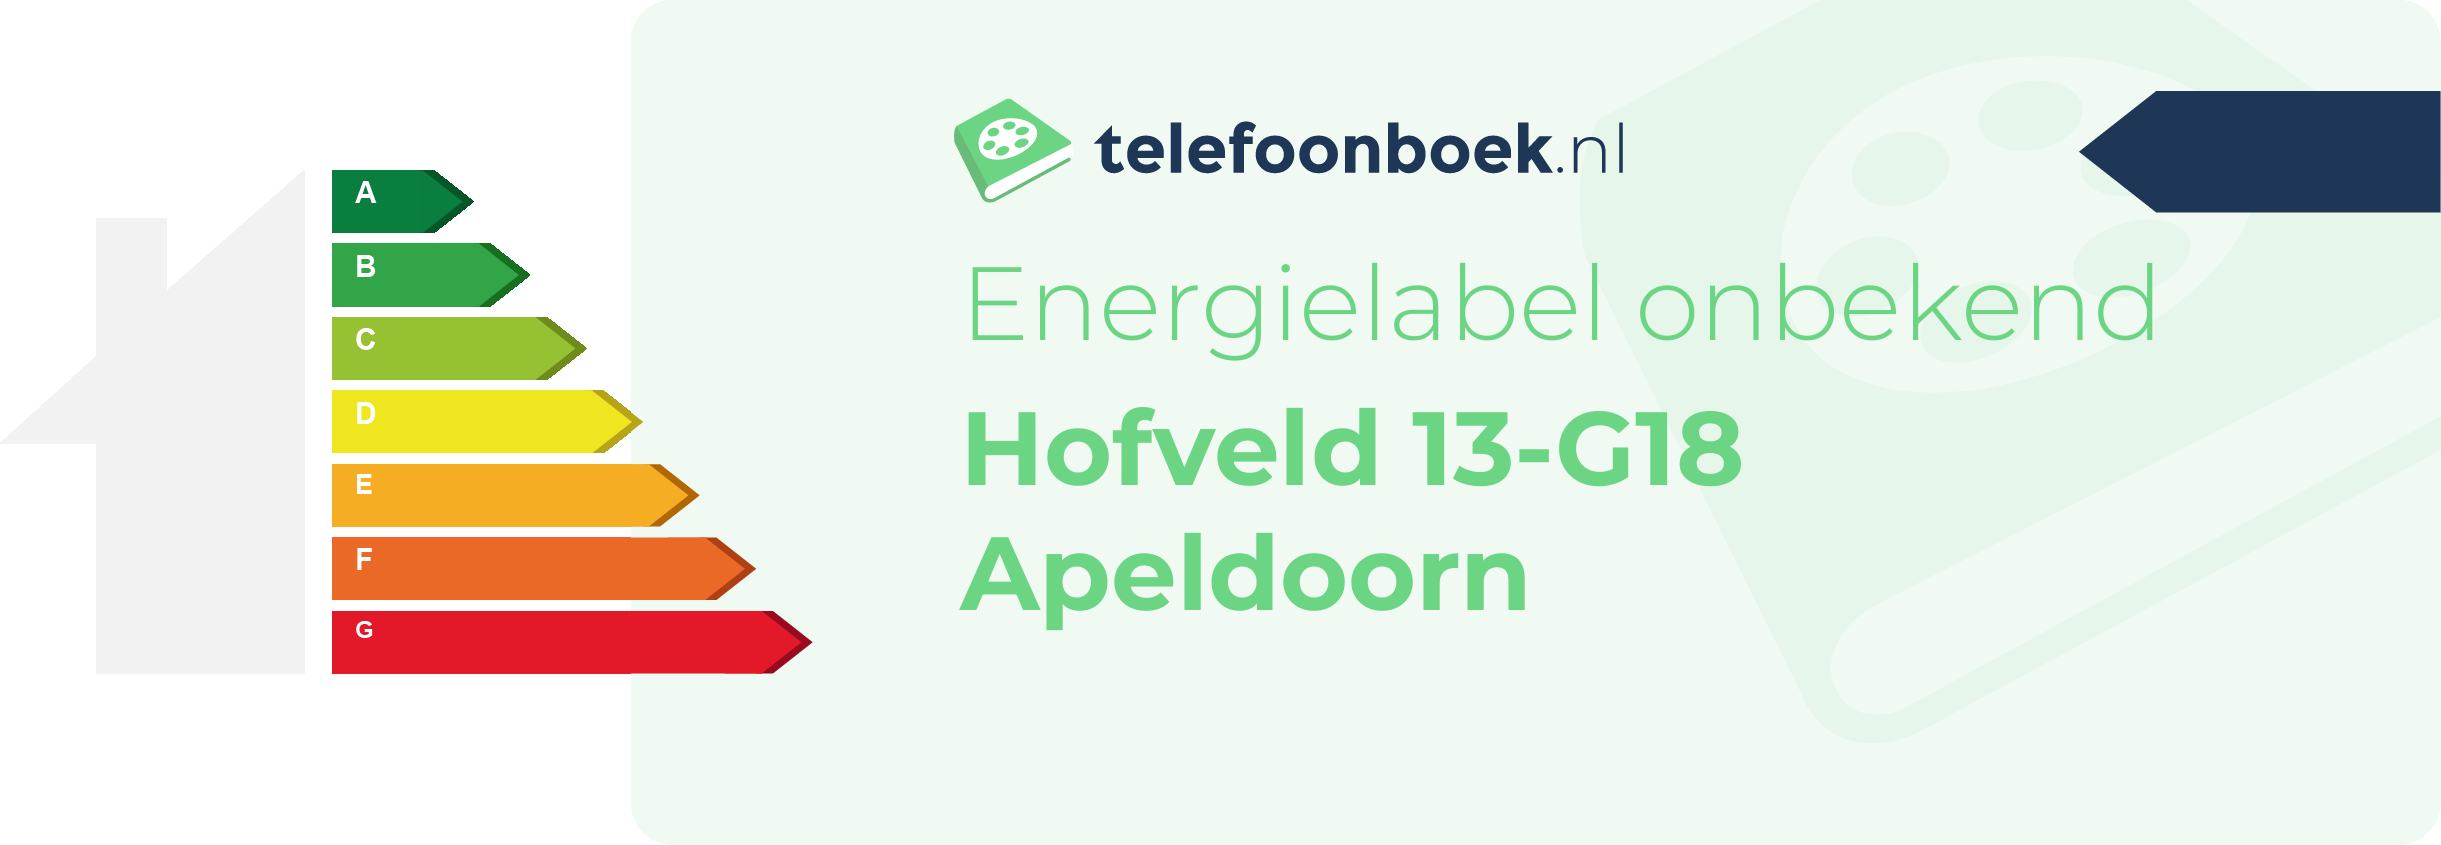 Energielabel Hofveld 13-G18 Apeldoorn